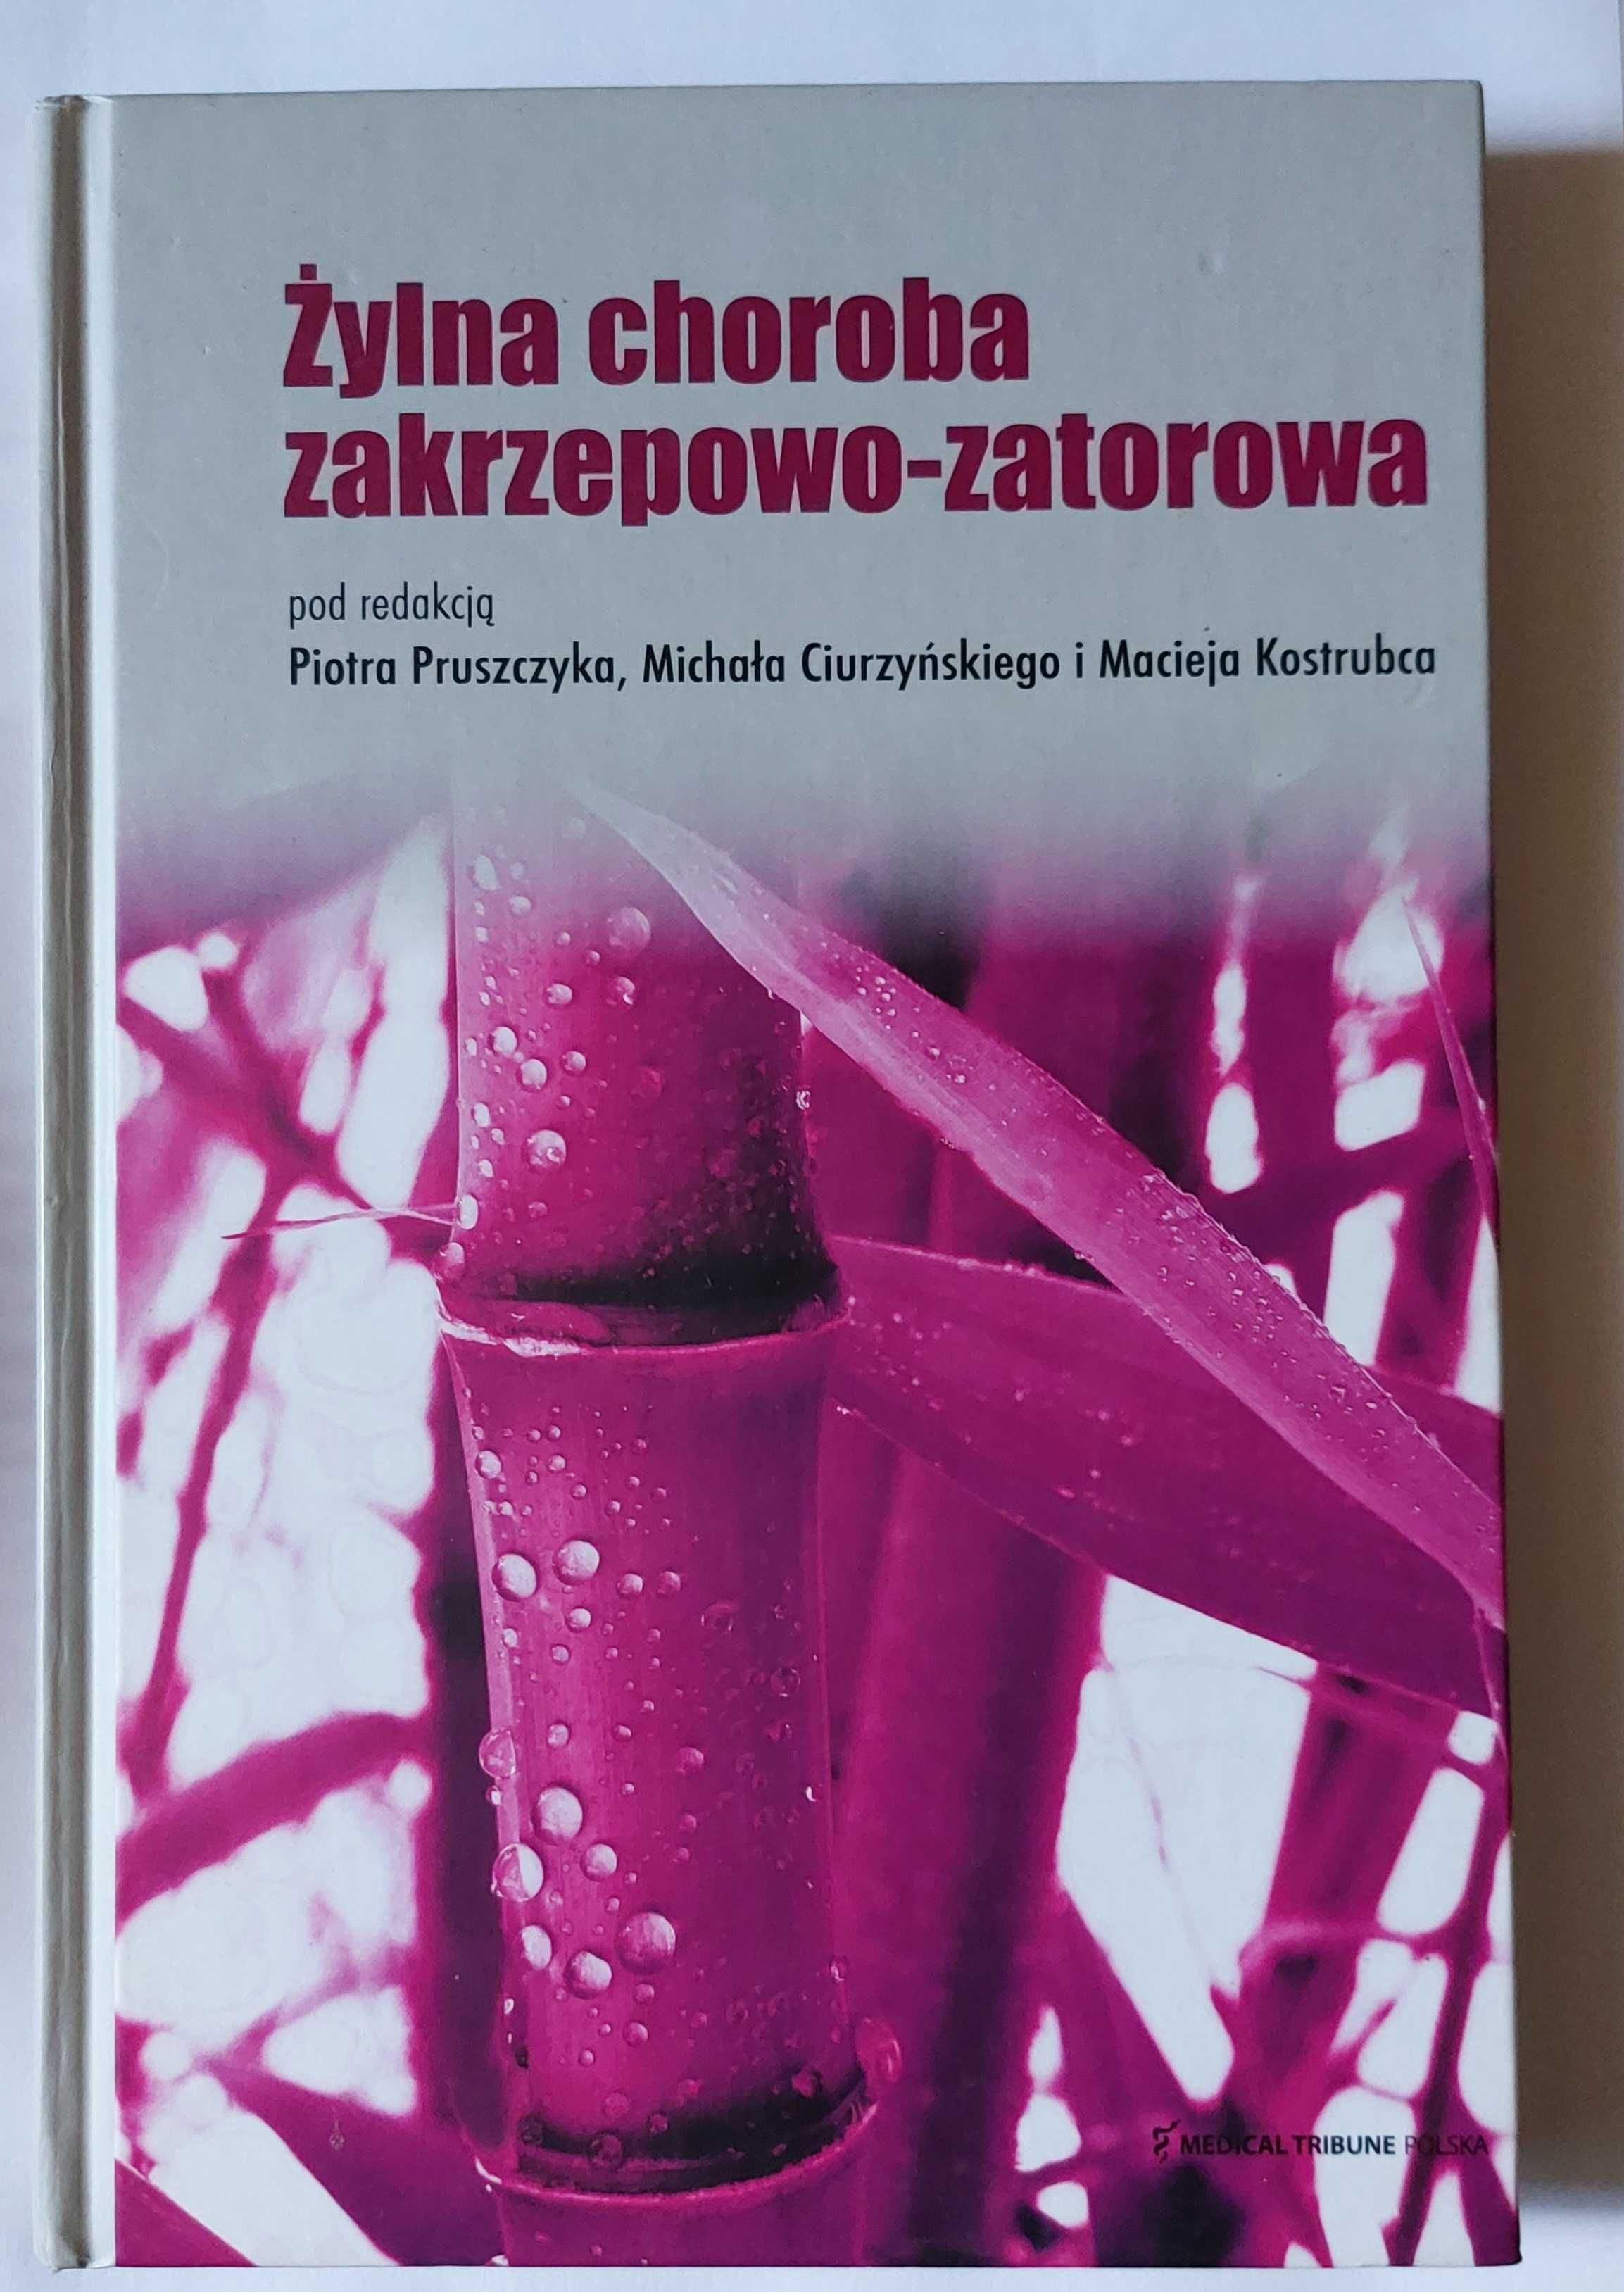 Żylna Choroba ZAKRZEPOWO-ZATOROWA | książka w twardej oprawie